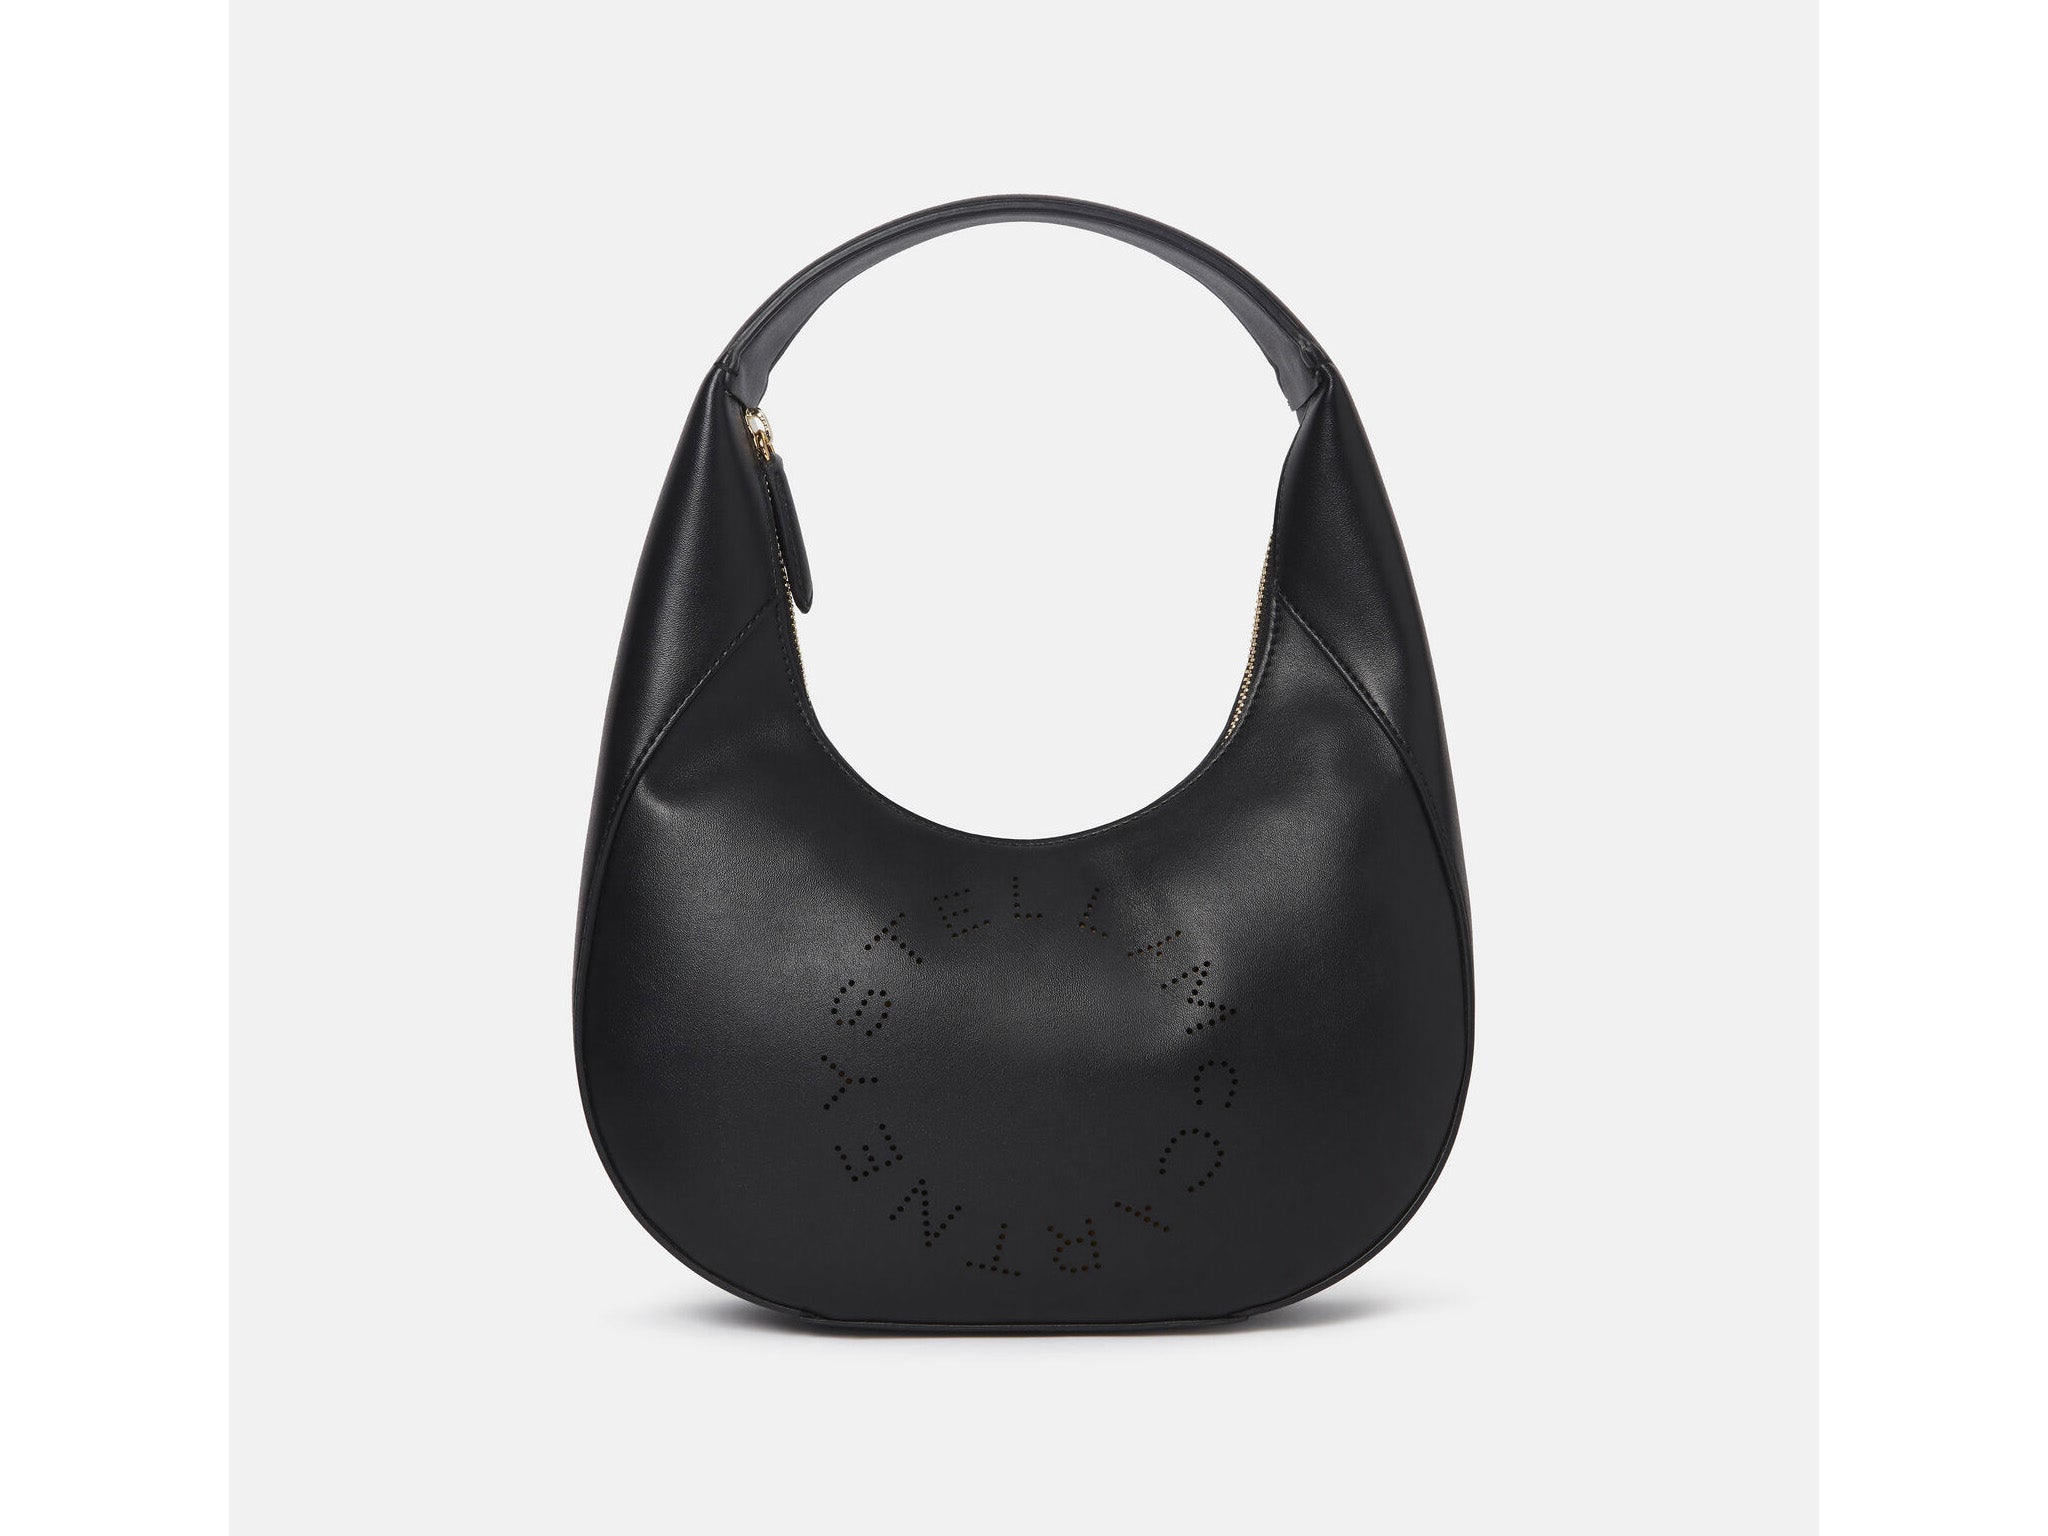 Vegan Leather Handbags - Cute Handbags – NGAOS UK | Vegan leather handbag,  Cute handbags, Handbag